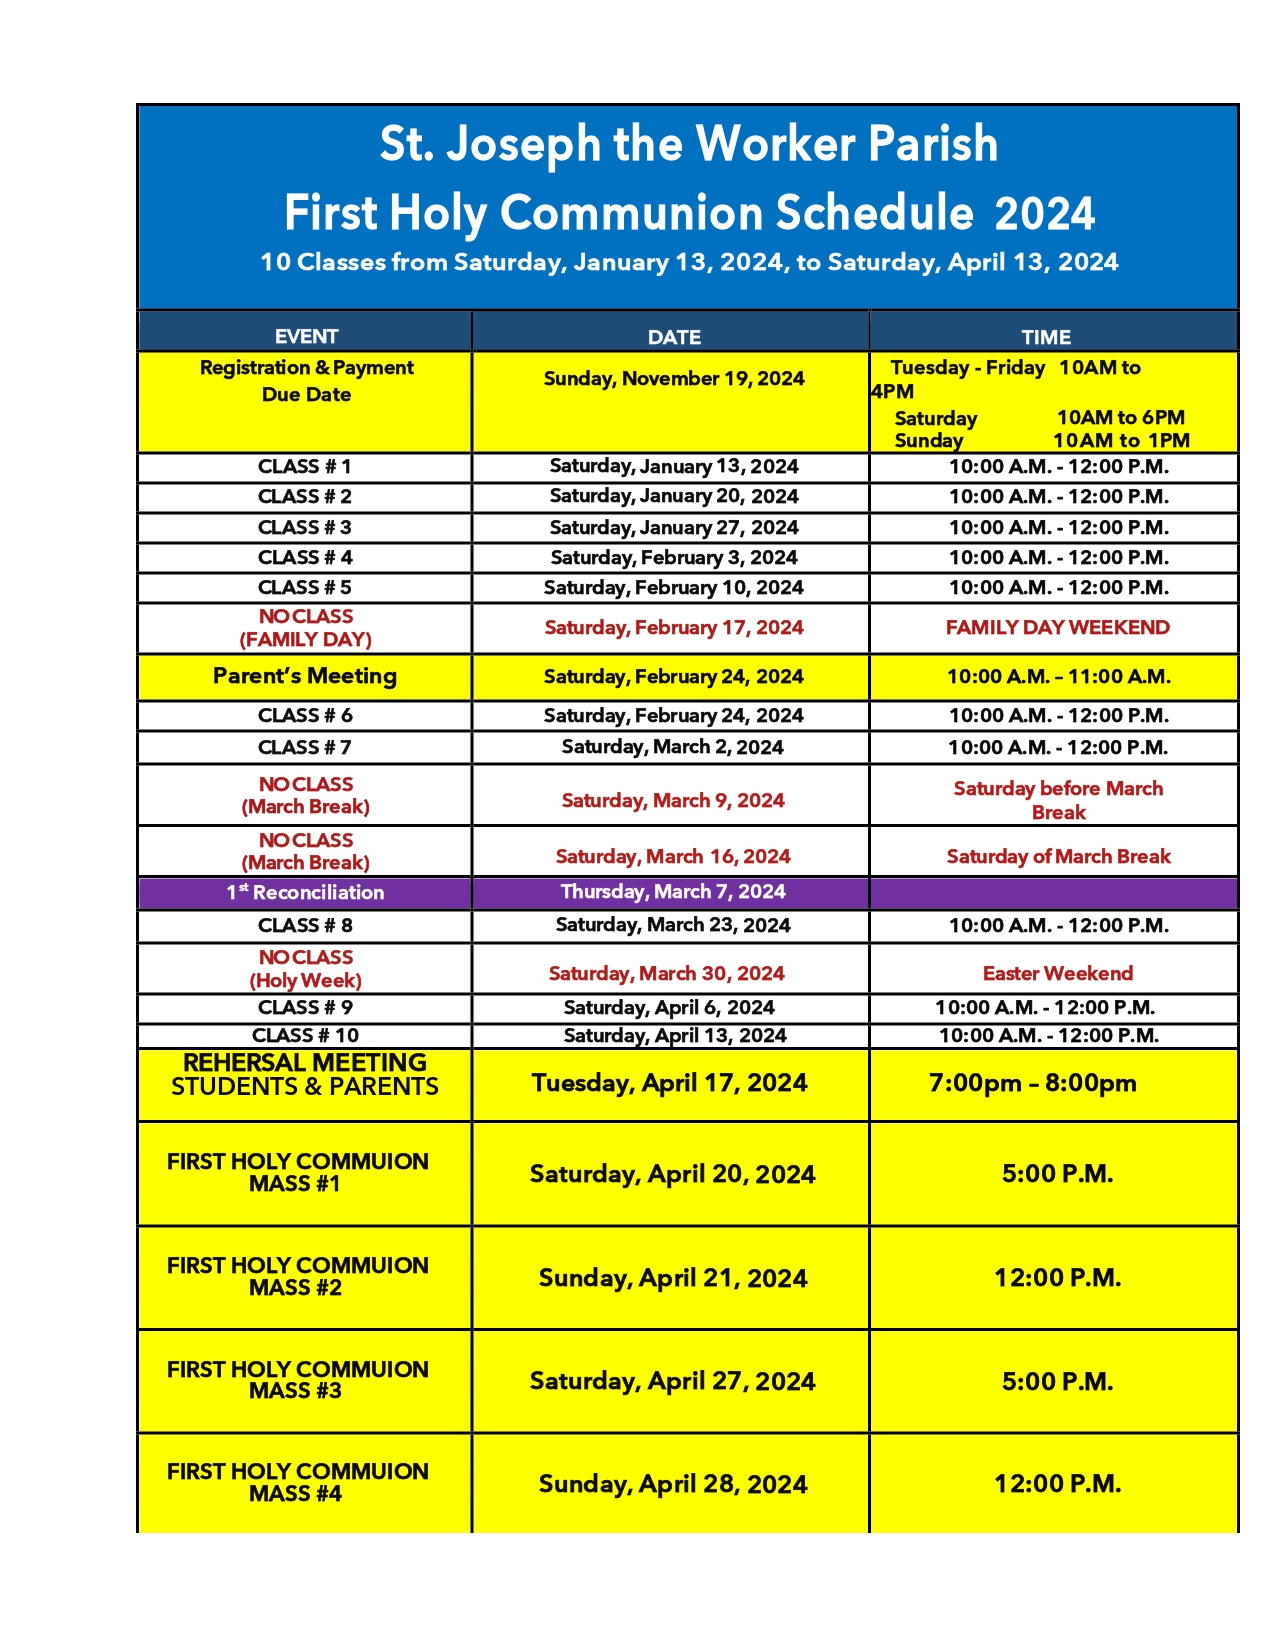 FHC schedule